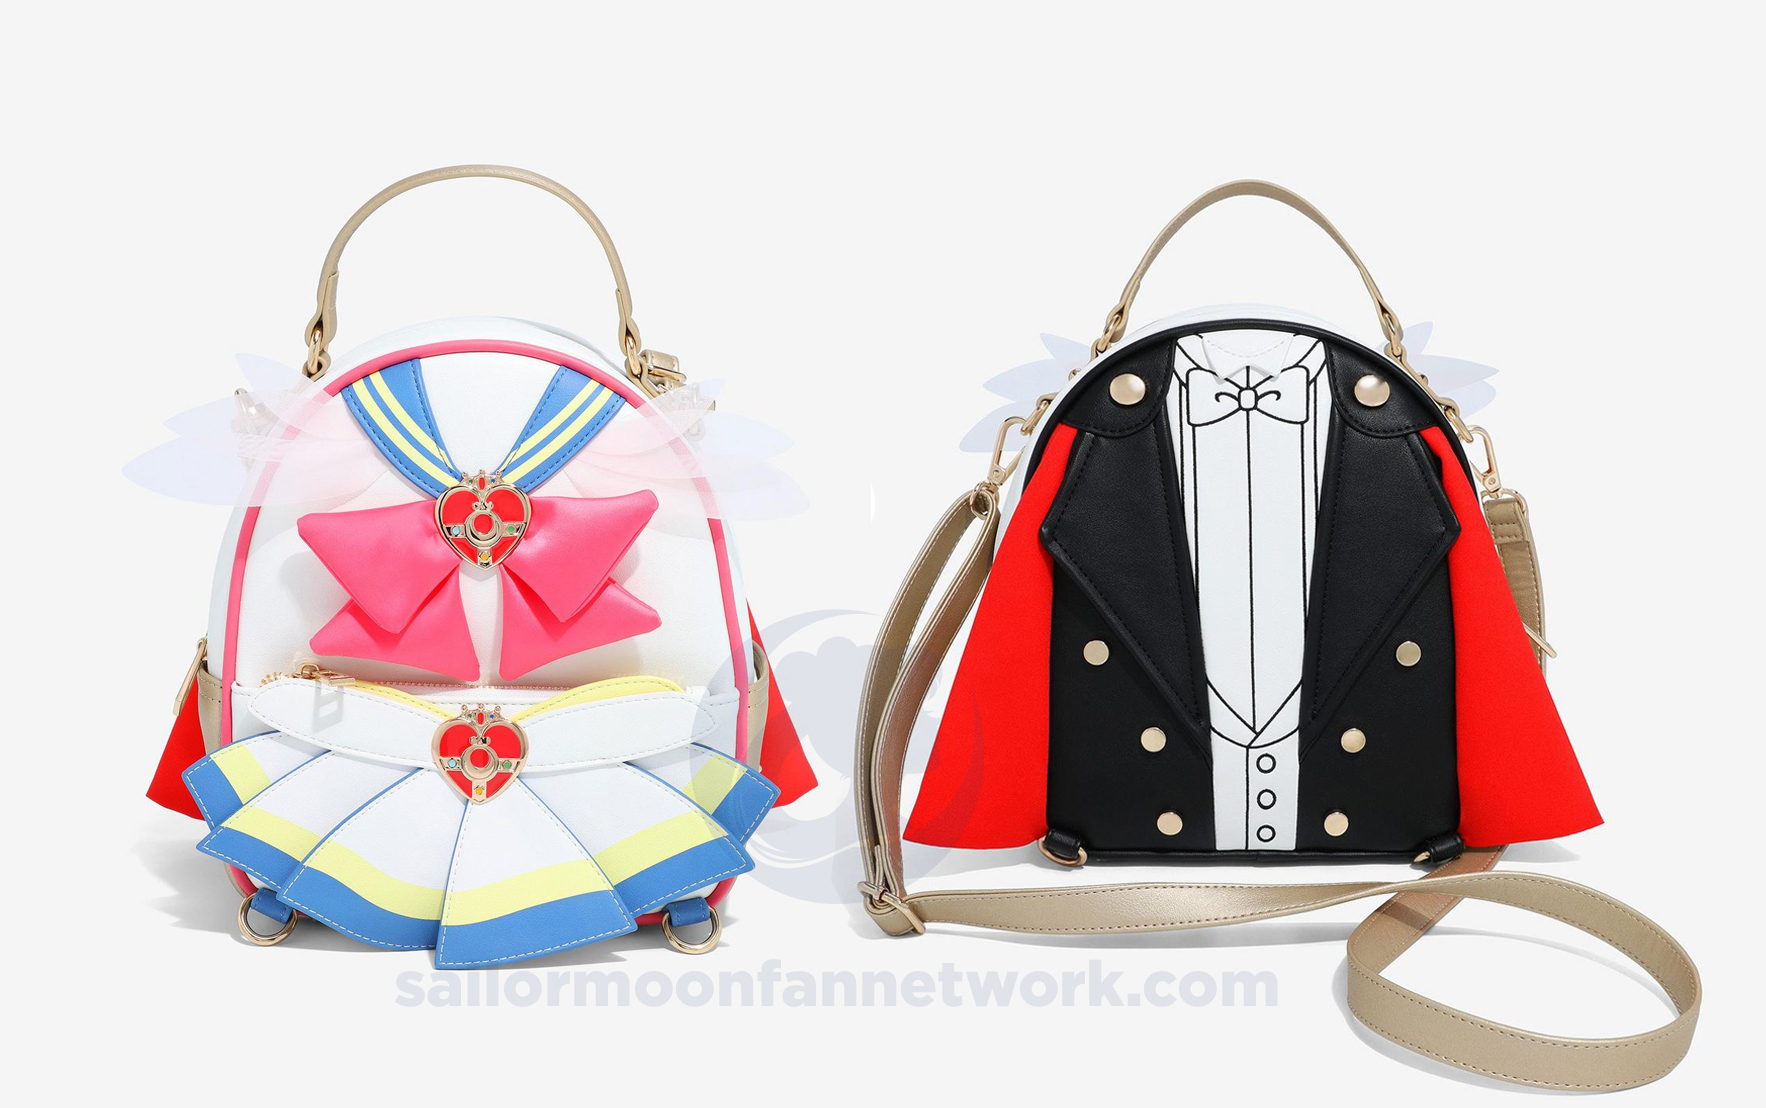 Sailor Moon Neoprene Lunch Bag, Lunch Box - Inspire Uplift